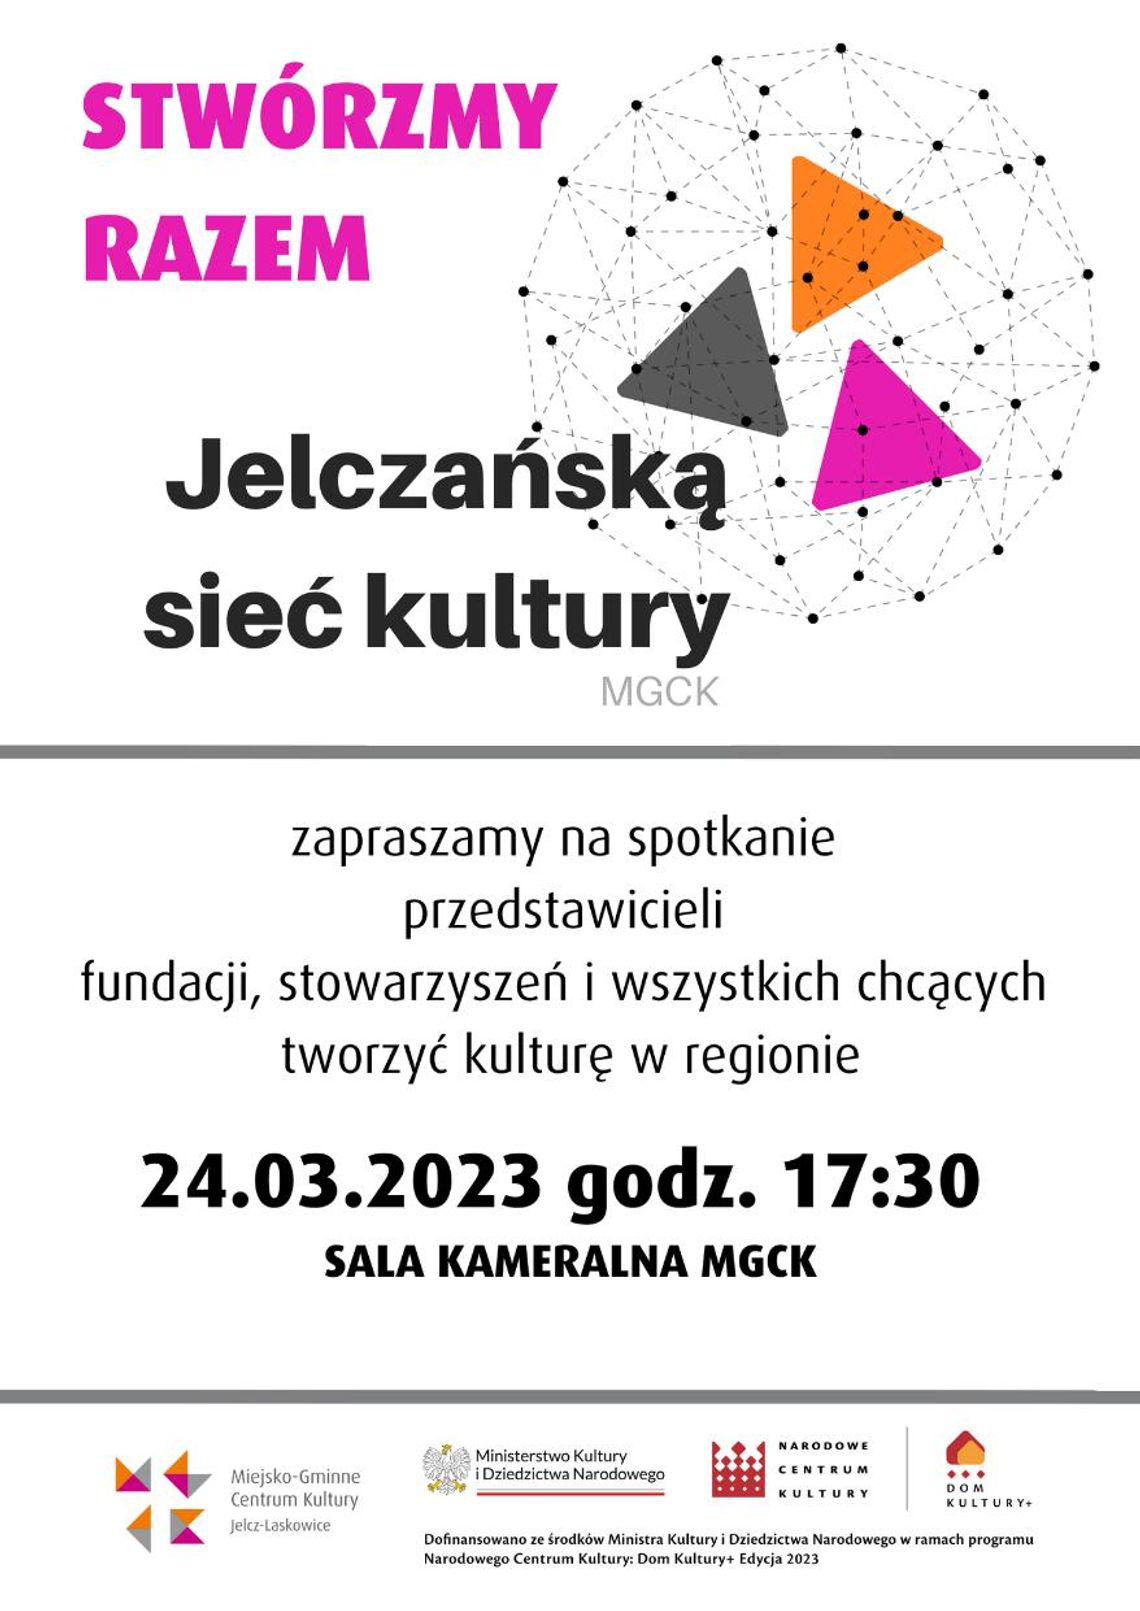 Jelcz-Laskowice. Przyłącz się do sieci kultury